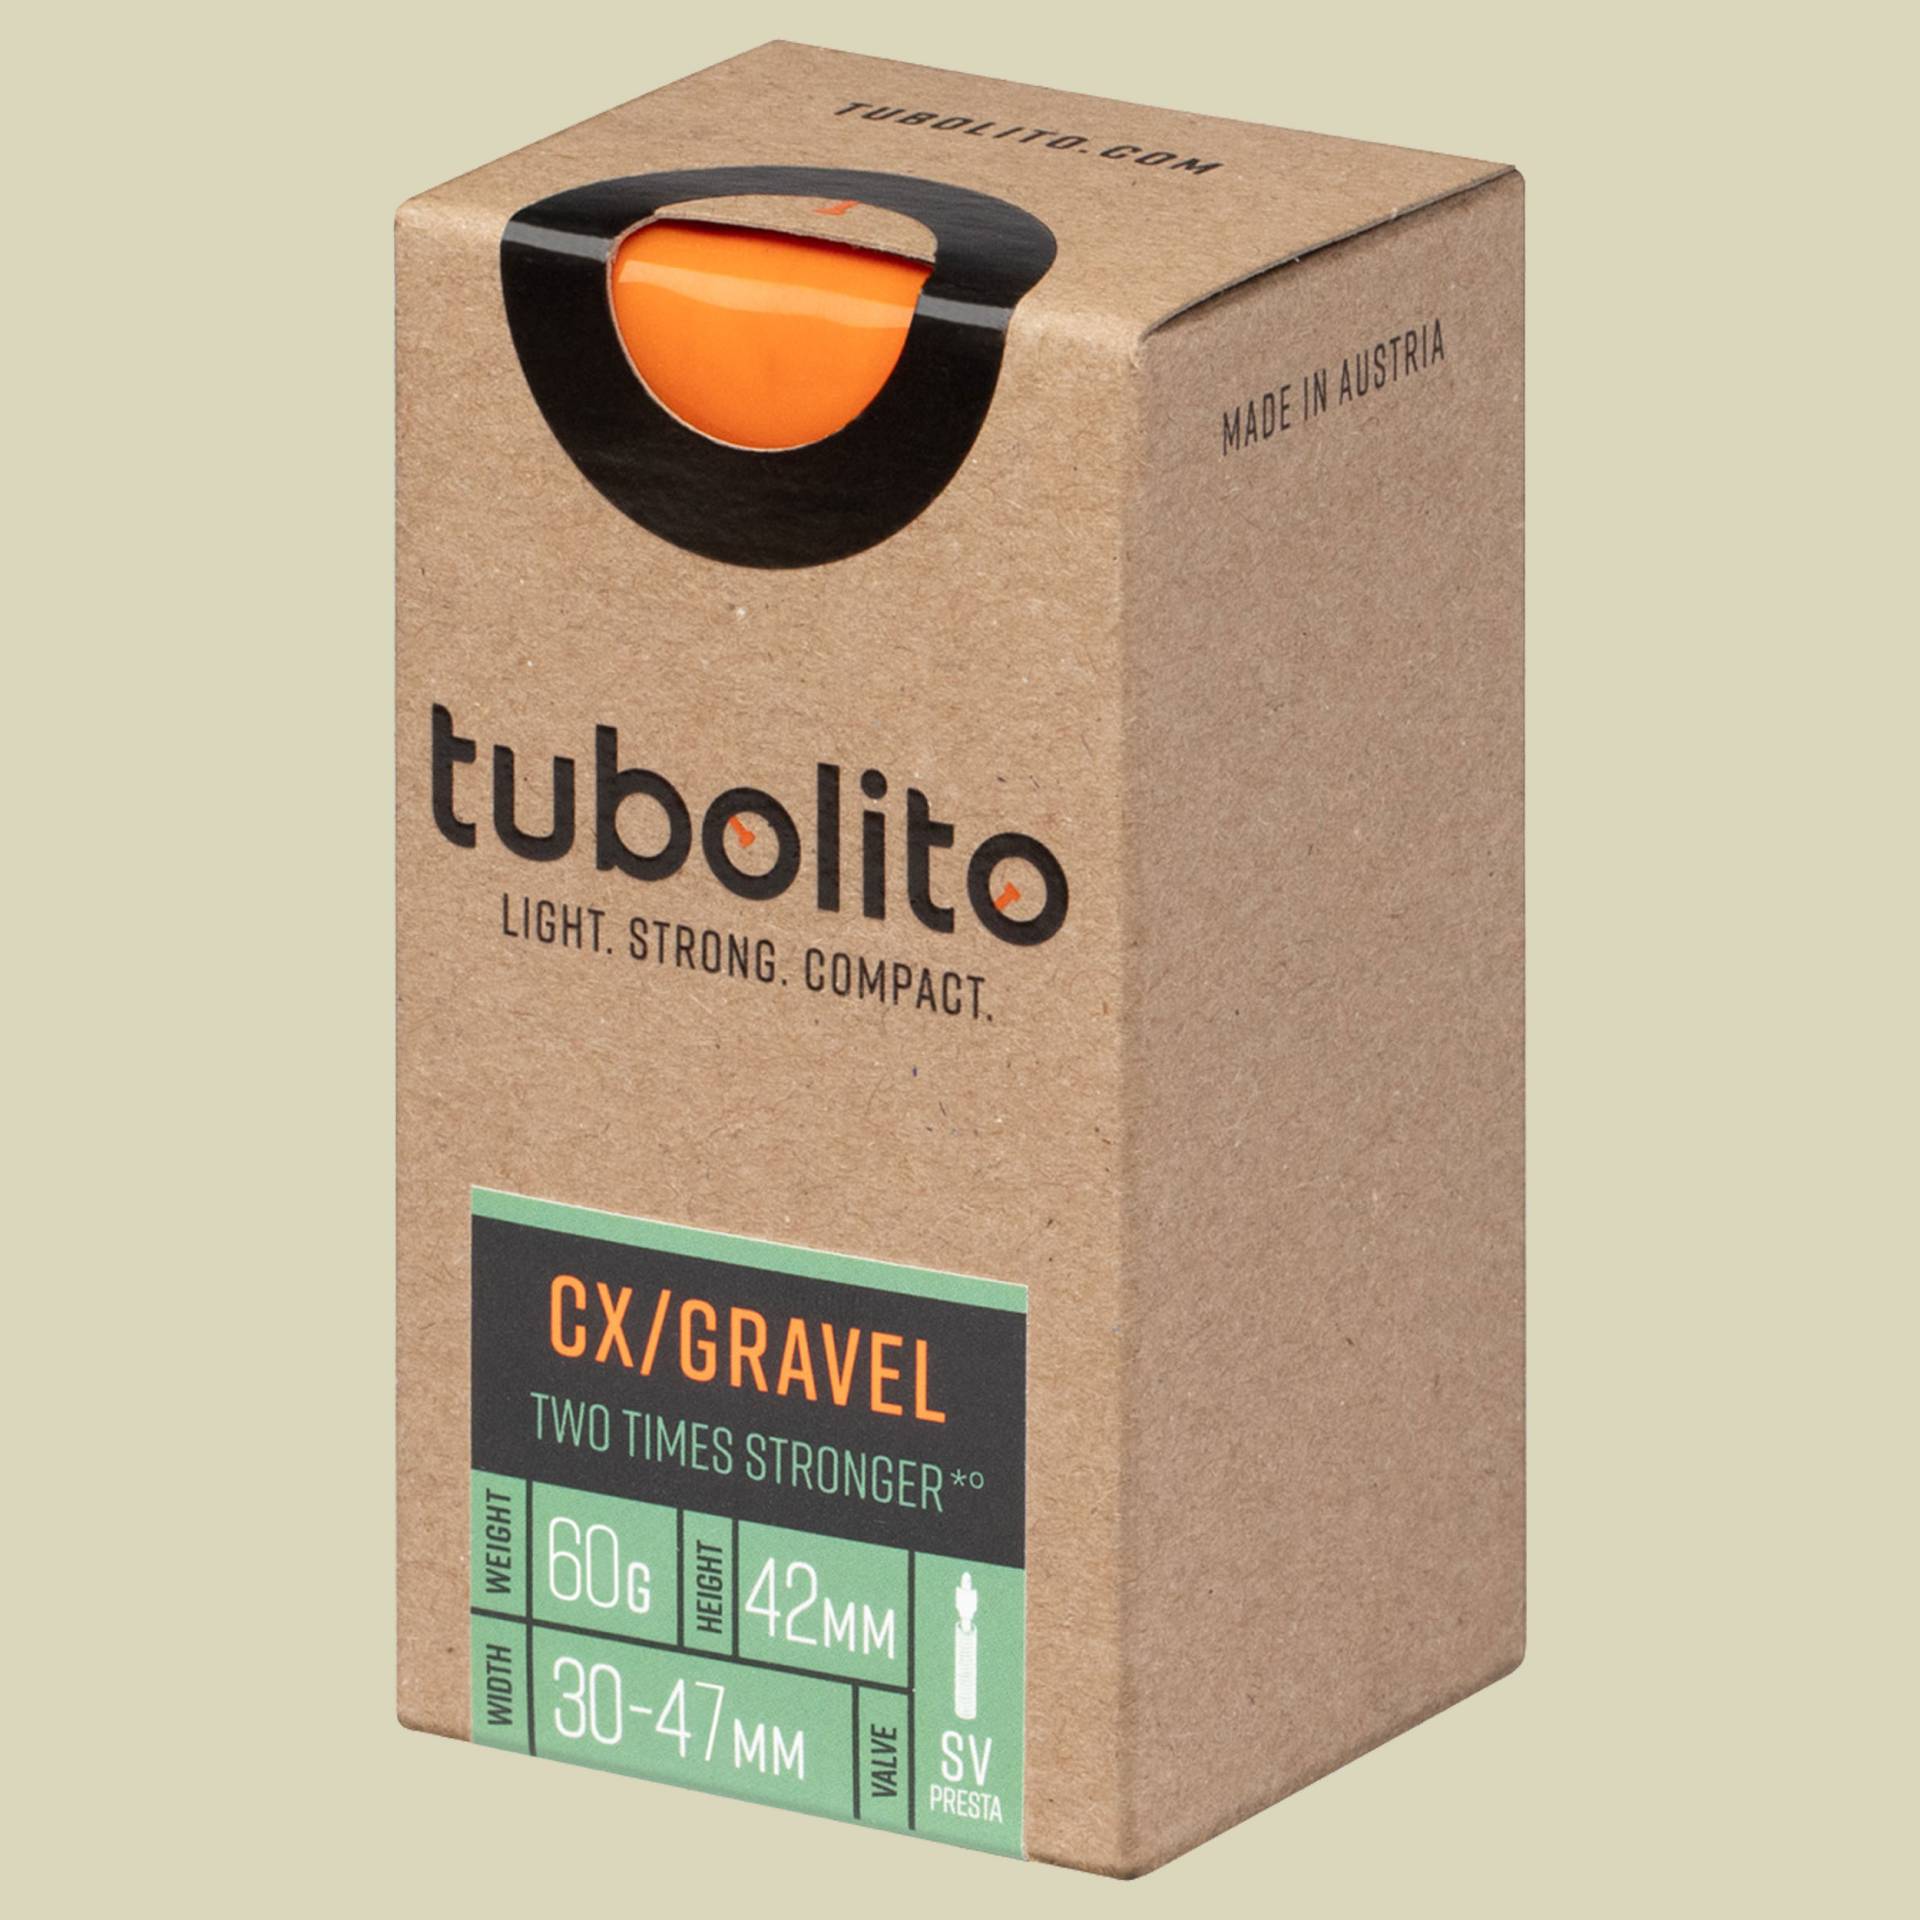 Tubo-CX/Gravel-All-SV42 von Tubolito